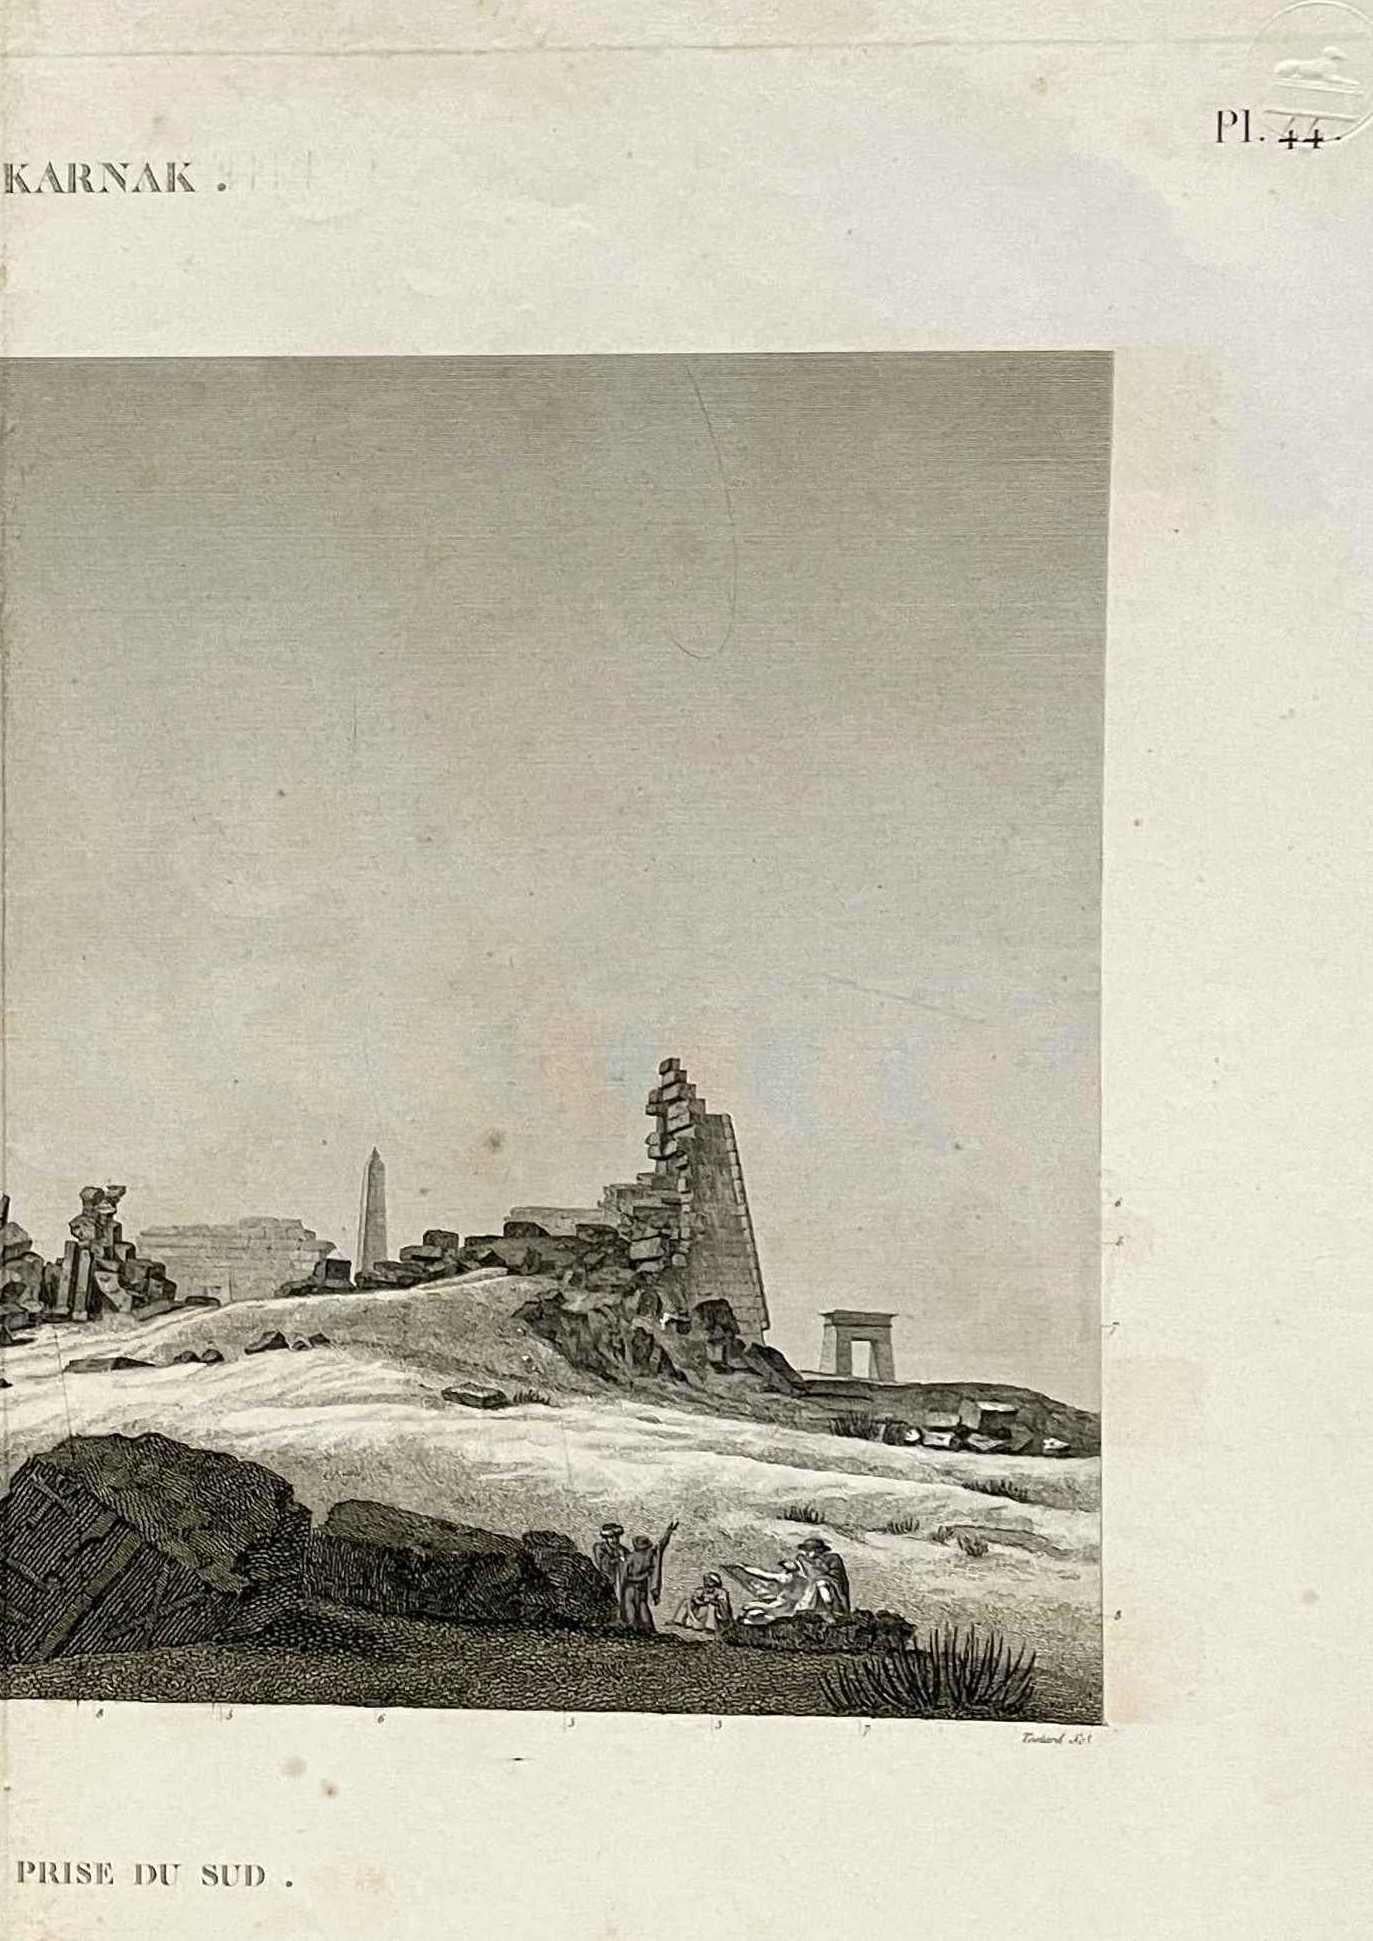 An engraving on paper by Charles Louis Balzac, DESCRIPTION DE L'EGYPTE. Thèbes. Karnak. Vue des propylées prise du sud. (ANTIQUITES, volume III, planche 44).  Archivally matted to 24